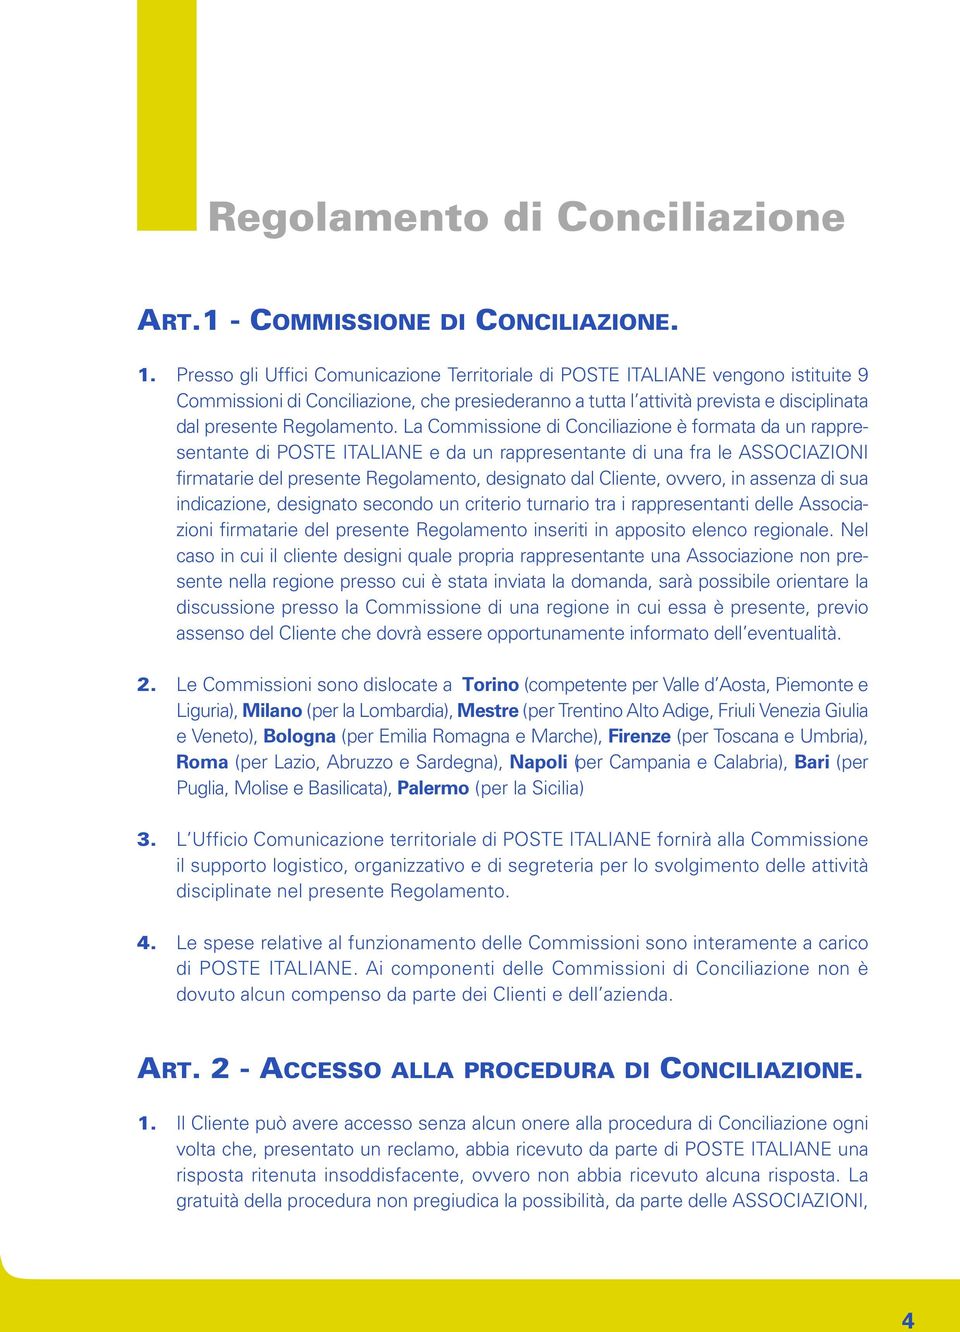 La Commissione di Conciliazione è formata da un rappresentante di POSTE ITALIANE e da un rappresentante di una fra le ASSOCIAZIONI firmatarie del presente Regolamento, designato dal Cliente, ovvero,